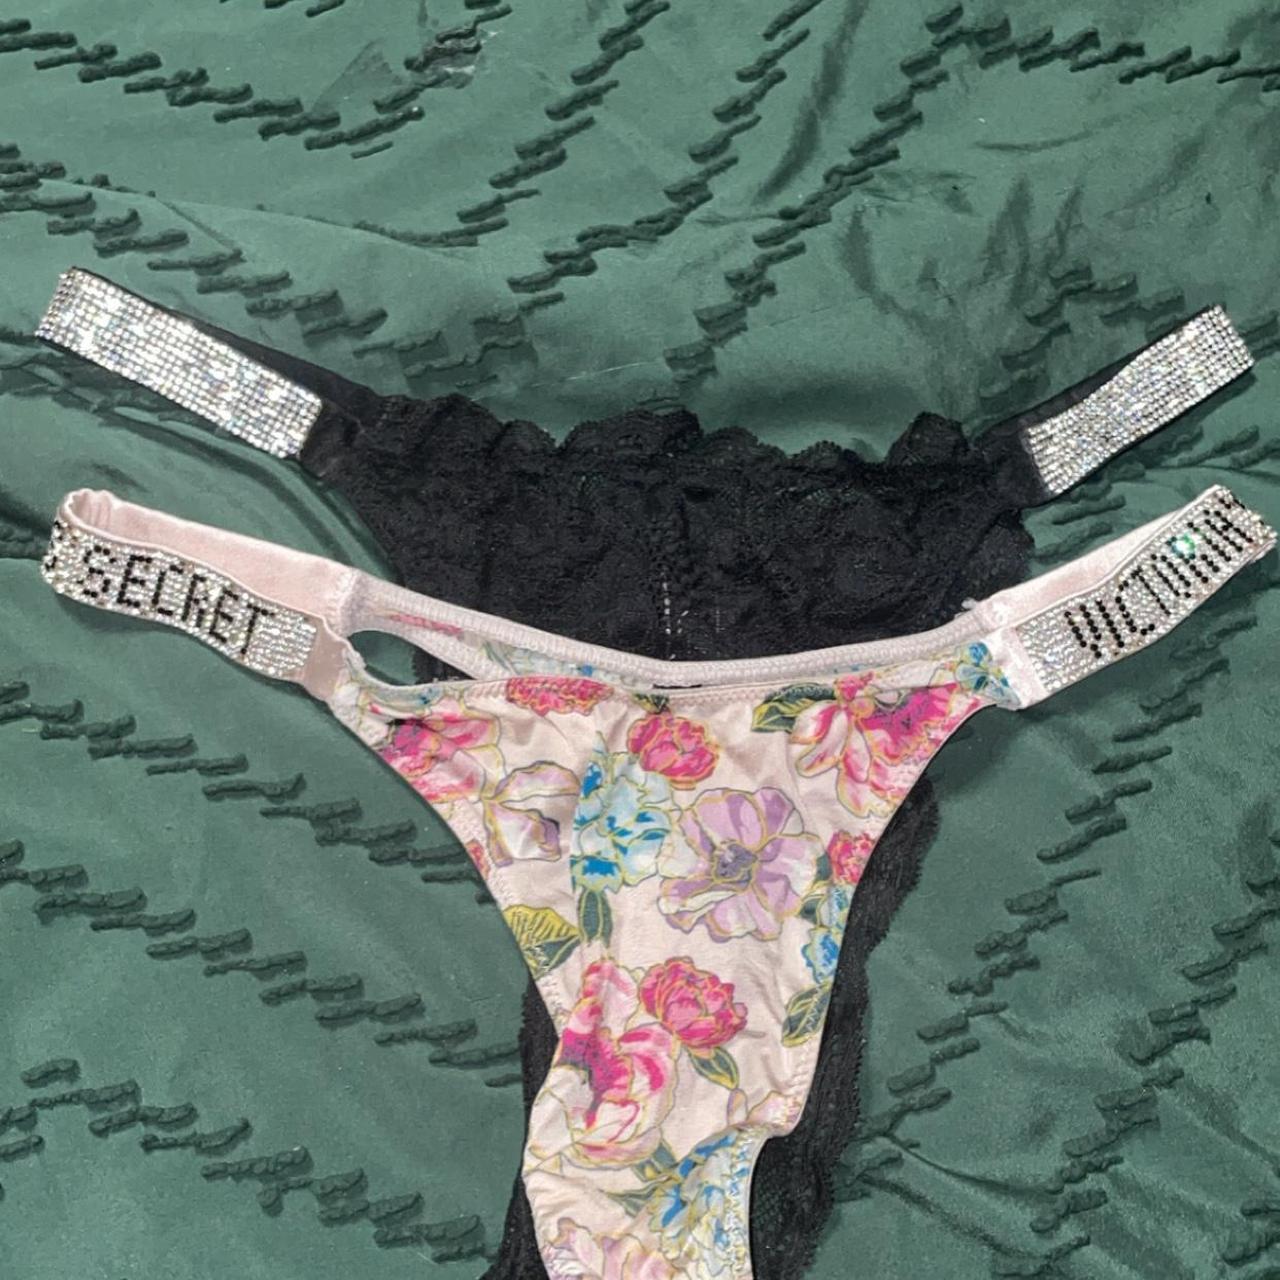 Brand new underwear from Victoria Secret - Depop